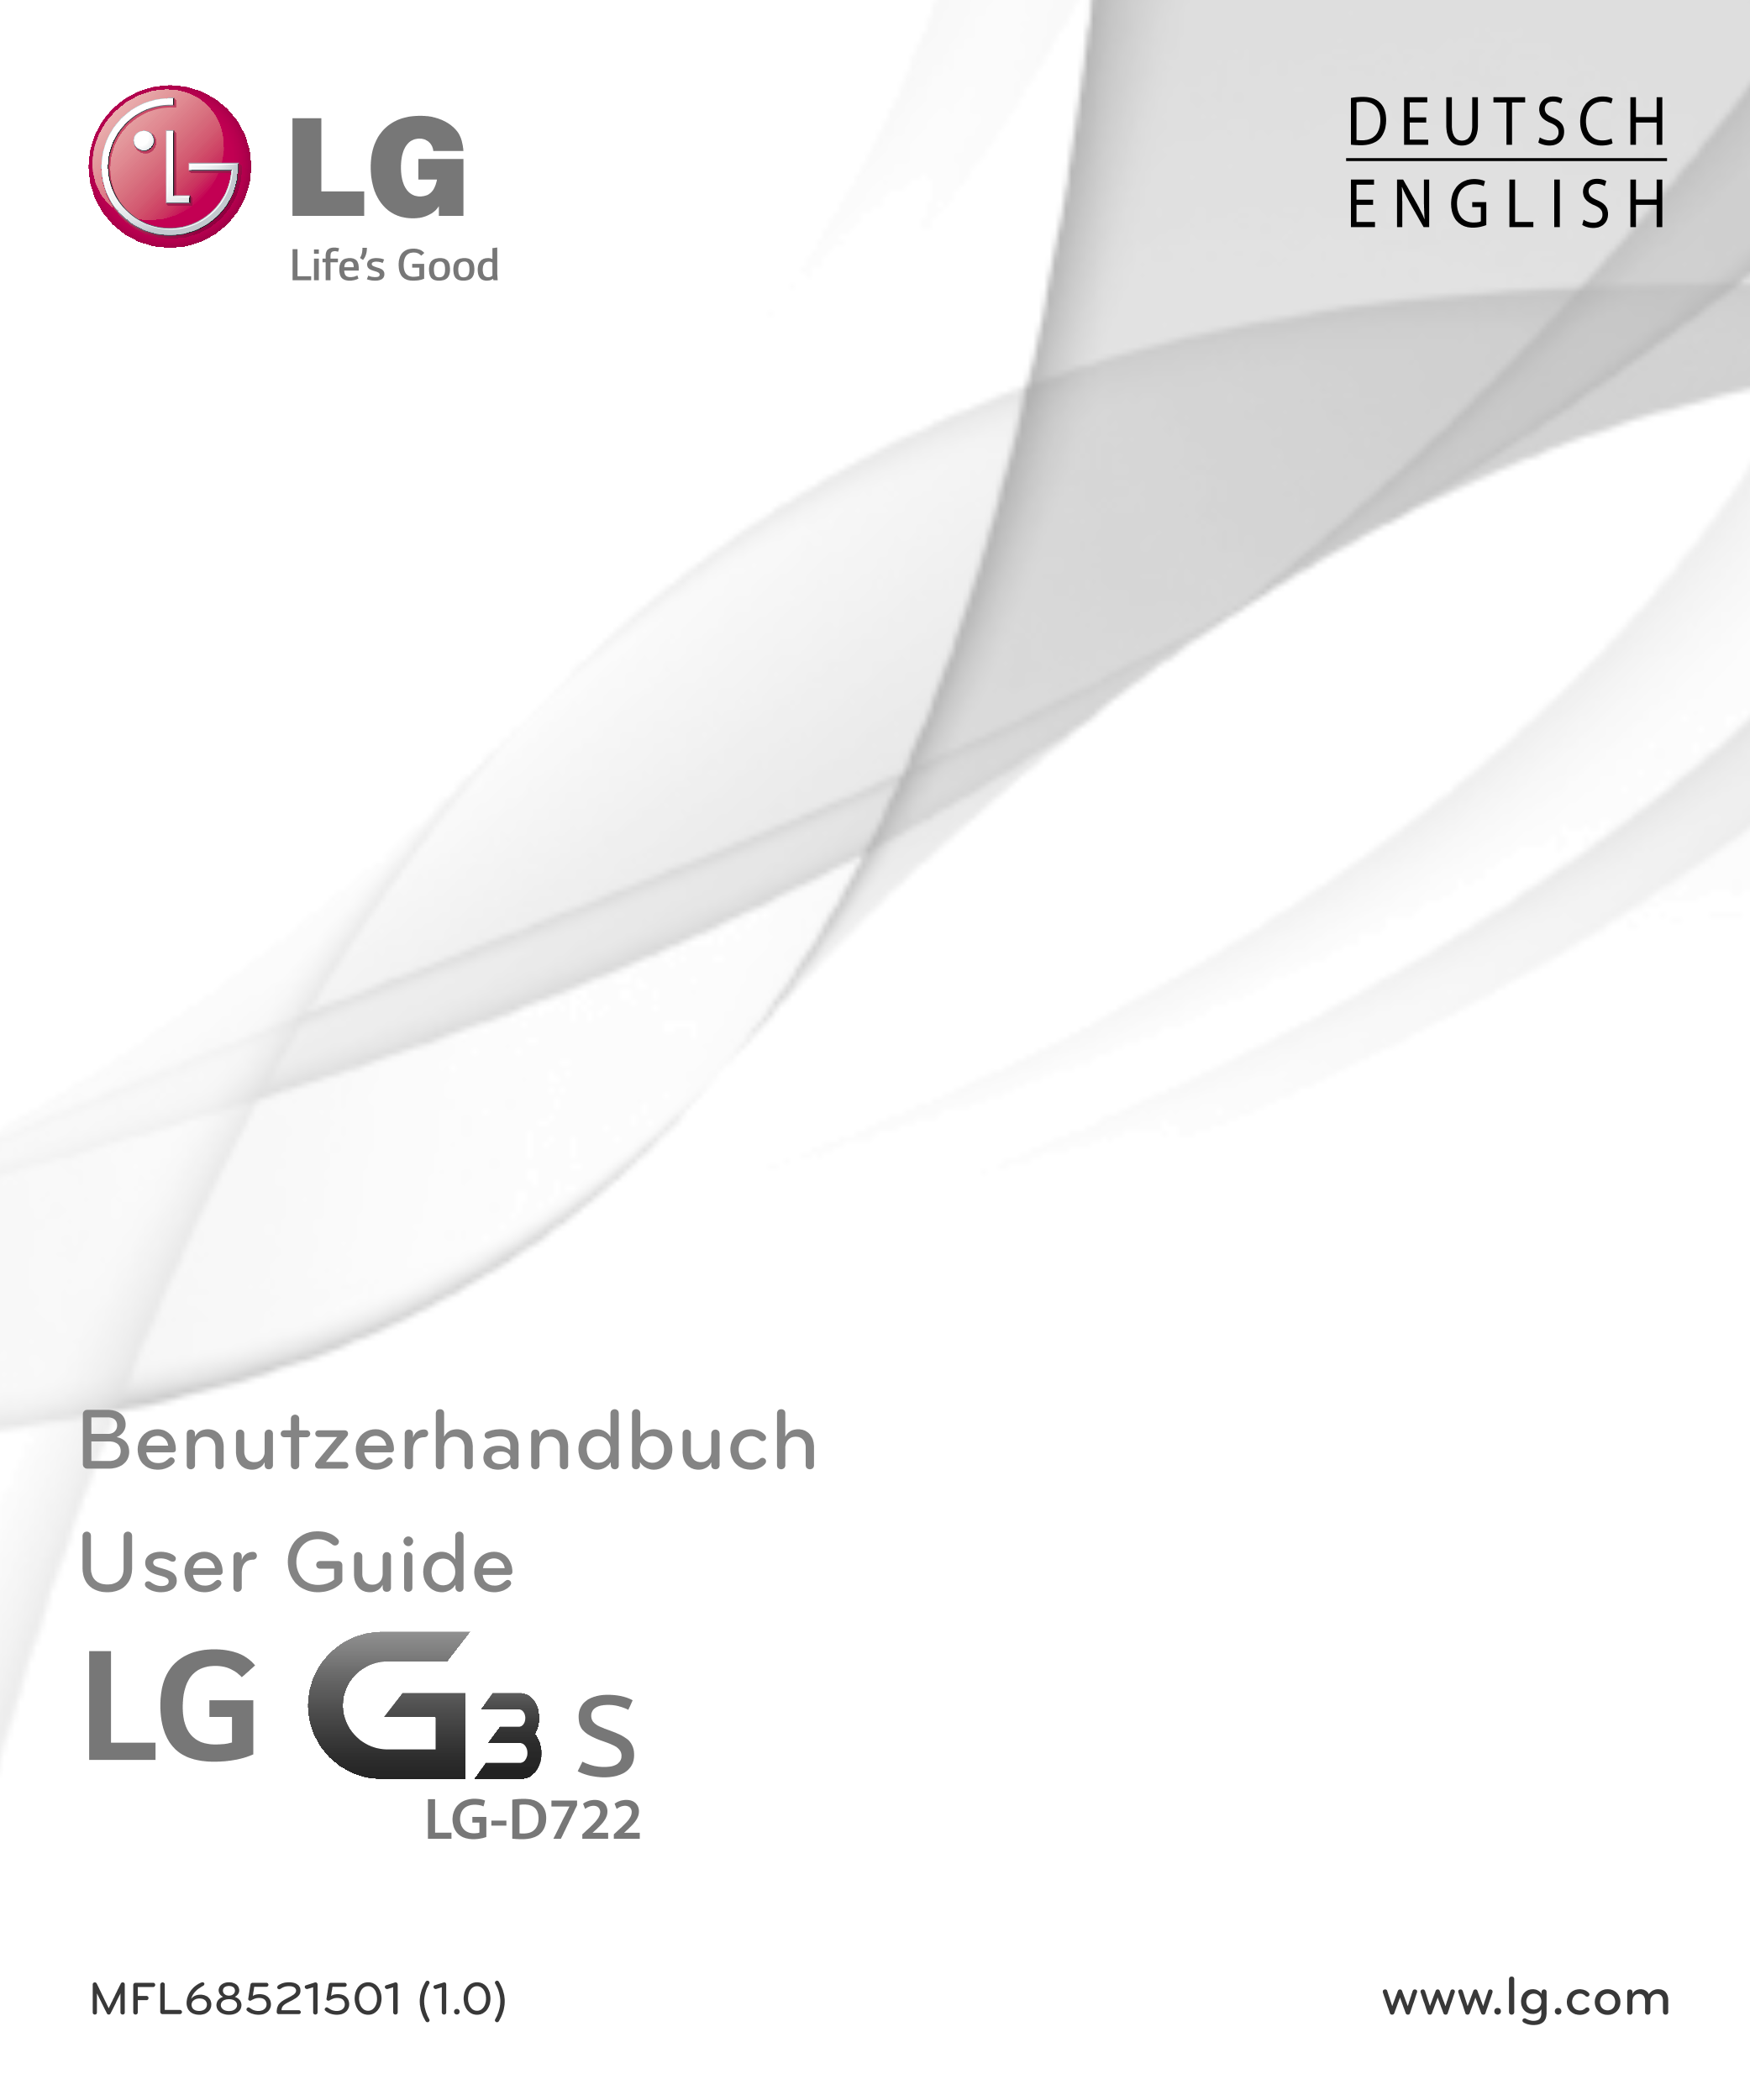 D E U T S C H
E N G L I S H
Benutzerhandbuch
User Guide
LG-D722
MFL68521501 (1.0)  www.lg.com